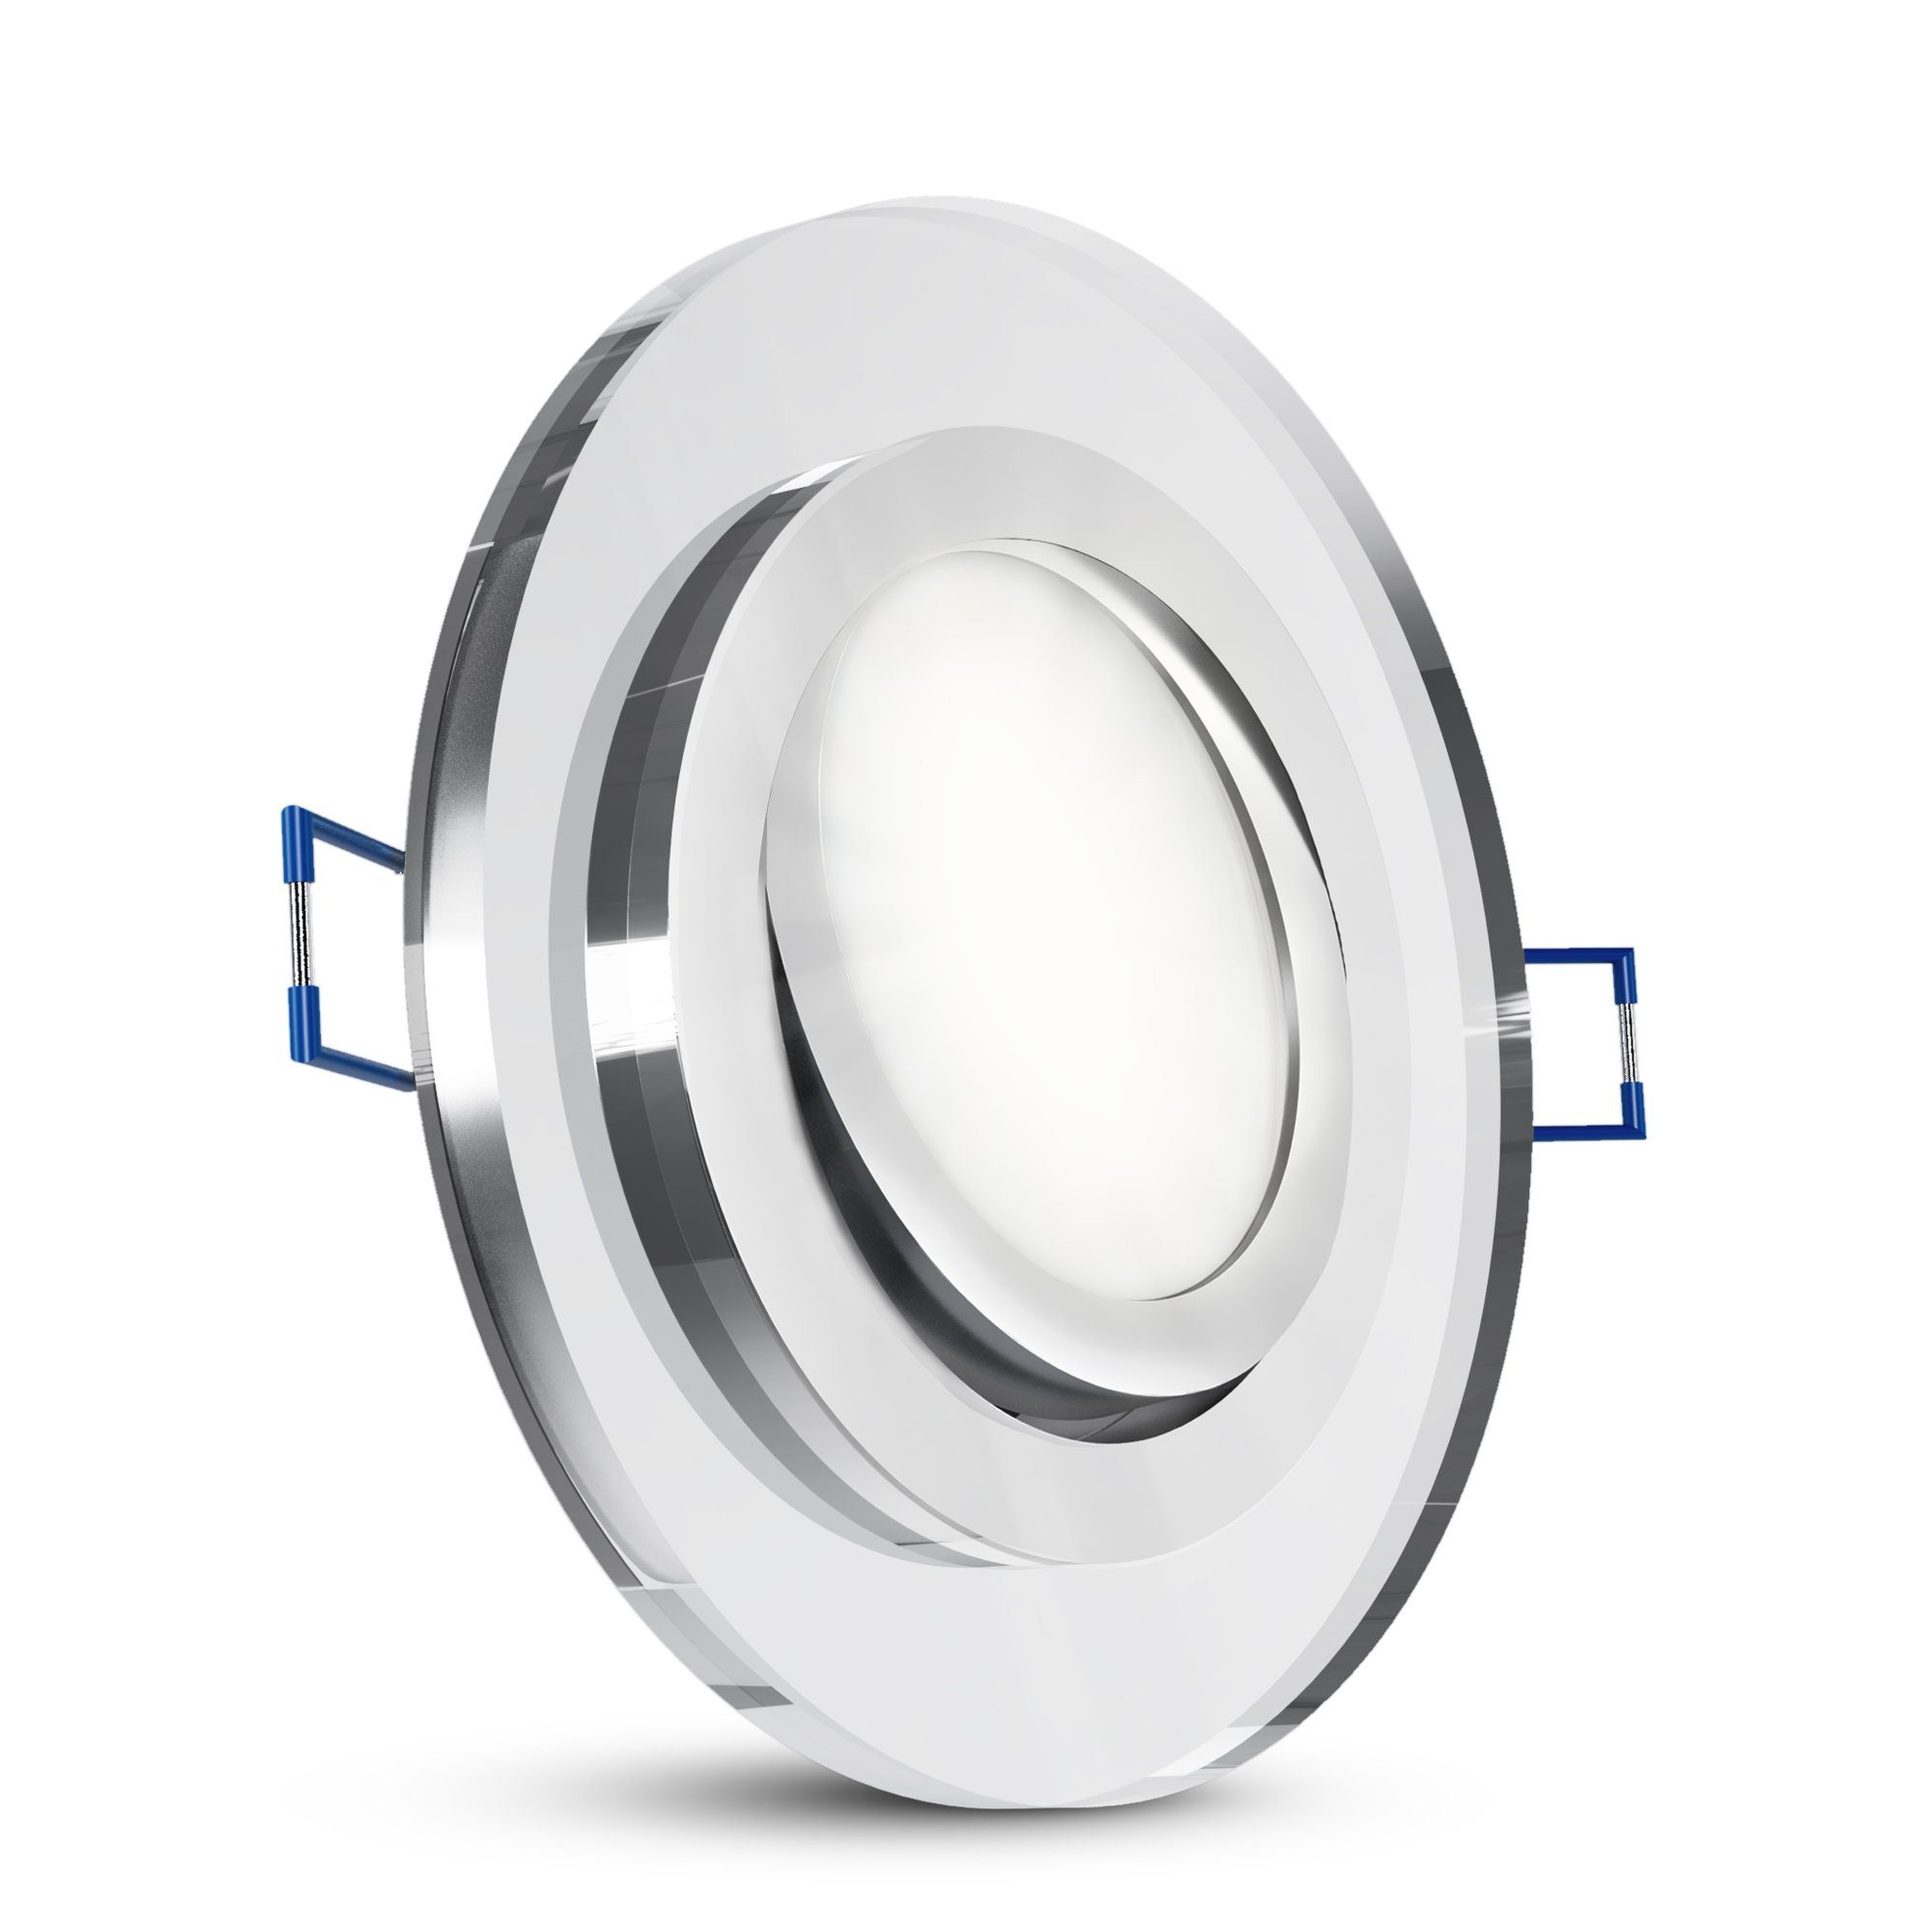 SSC-LUXon LED Einbaustrahler LED mit Neutralweiß klar schwenkbar Modul Flacher rund Glas Einbauspot LED neutral